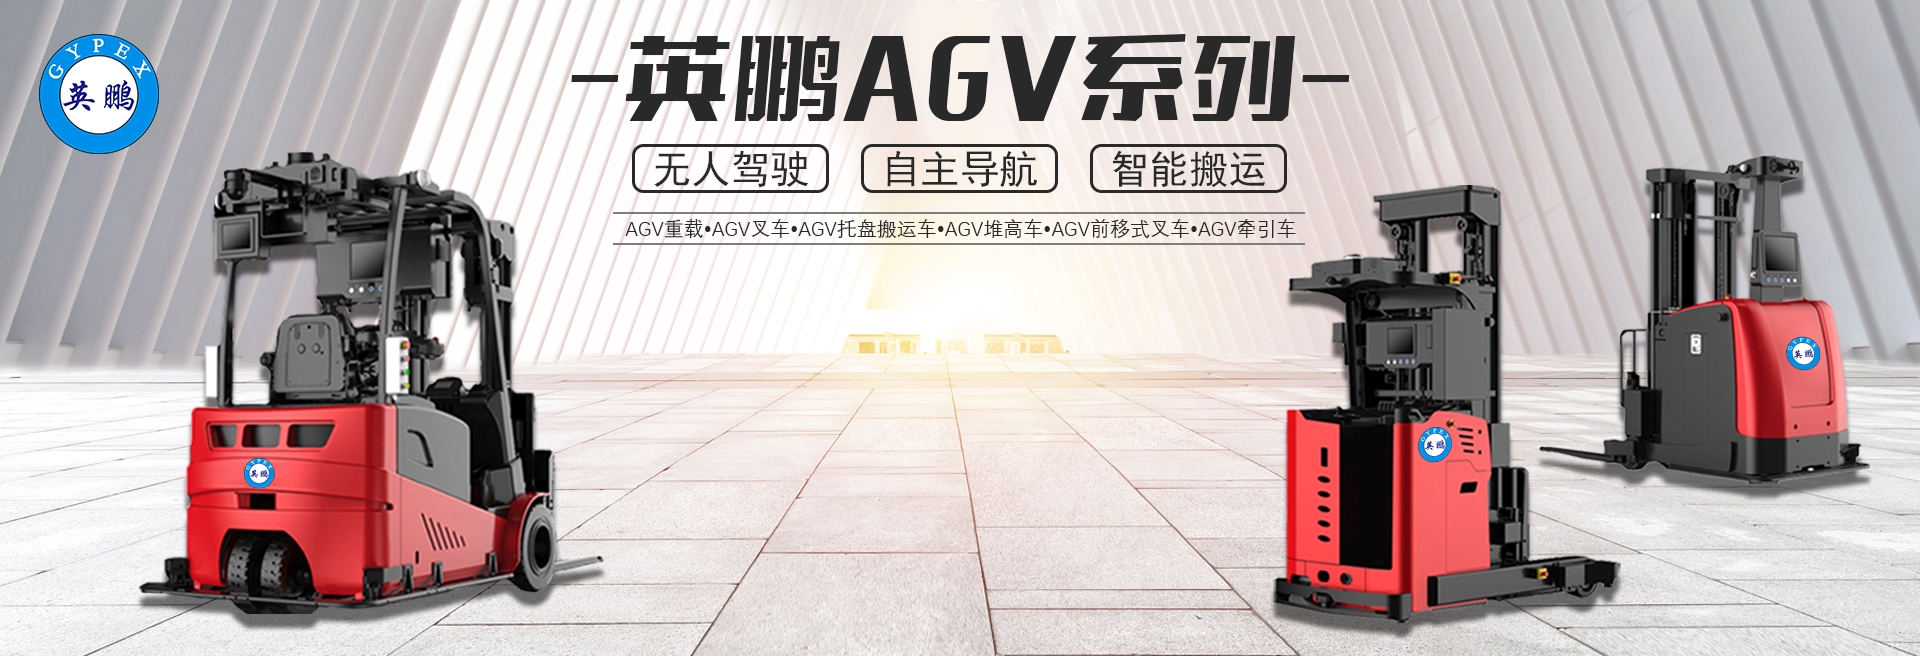 AGV-轮播图.jpg